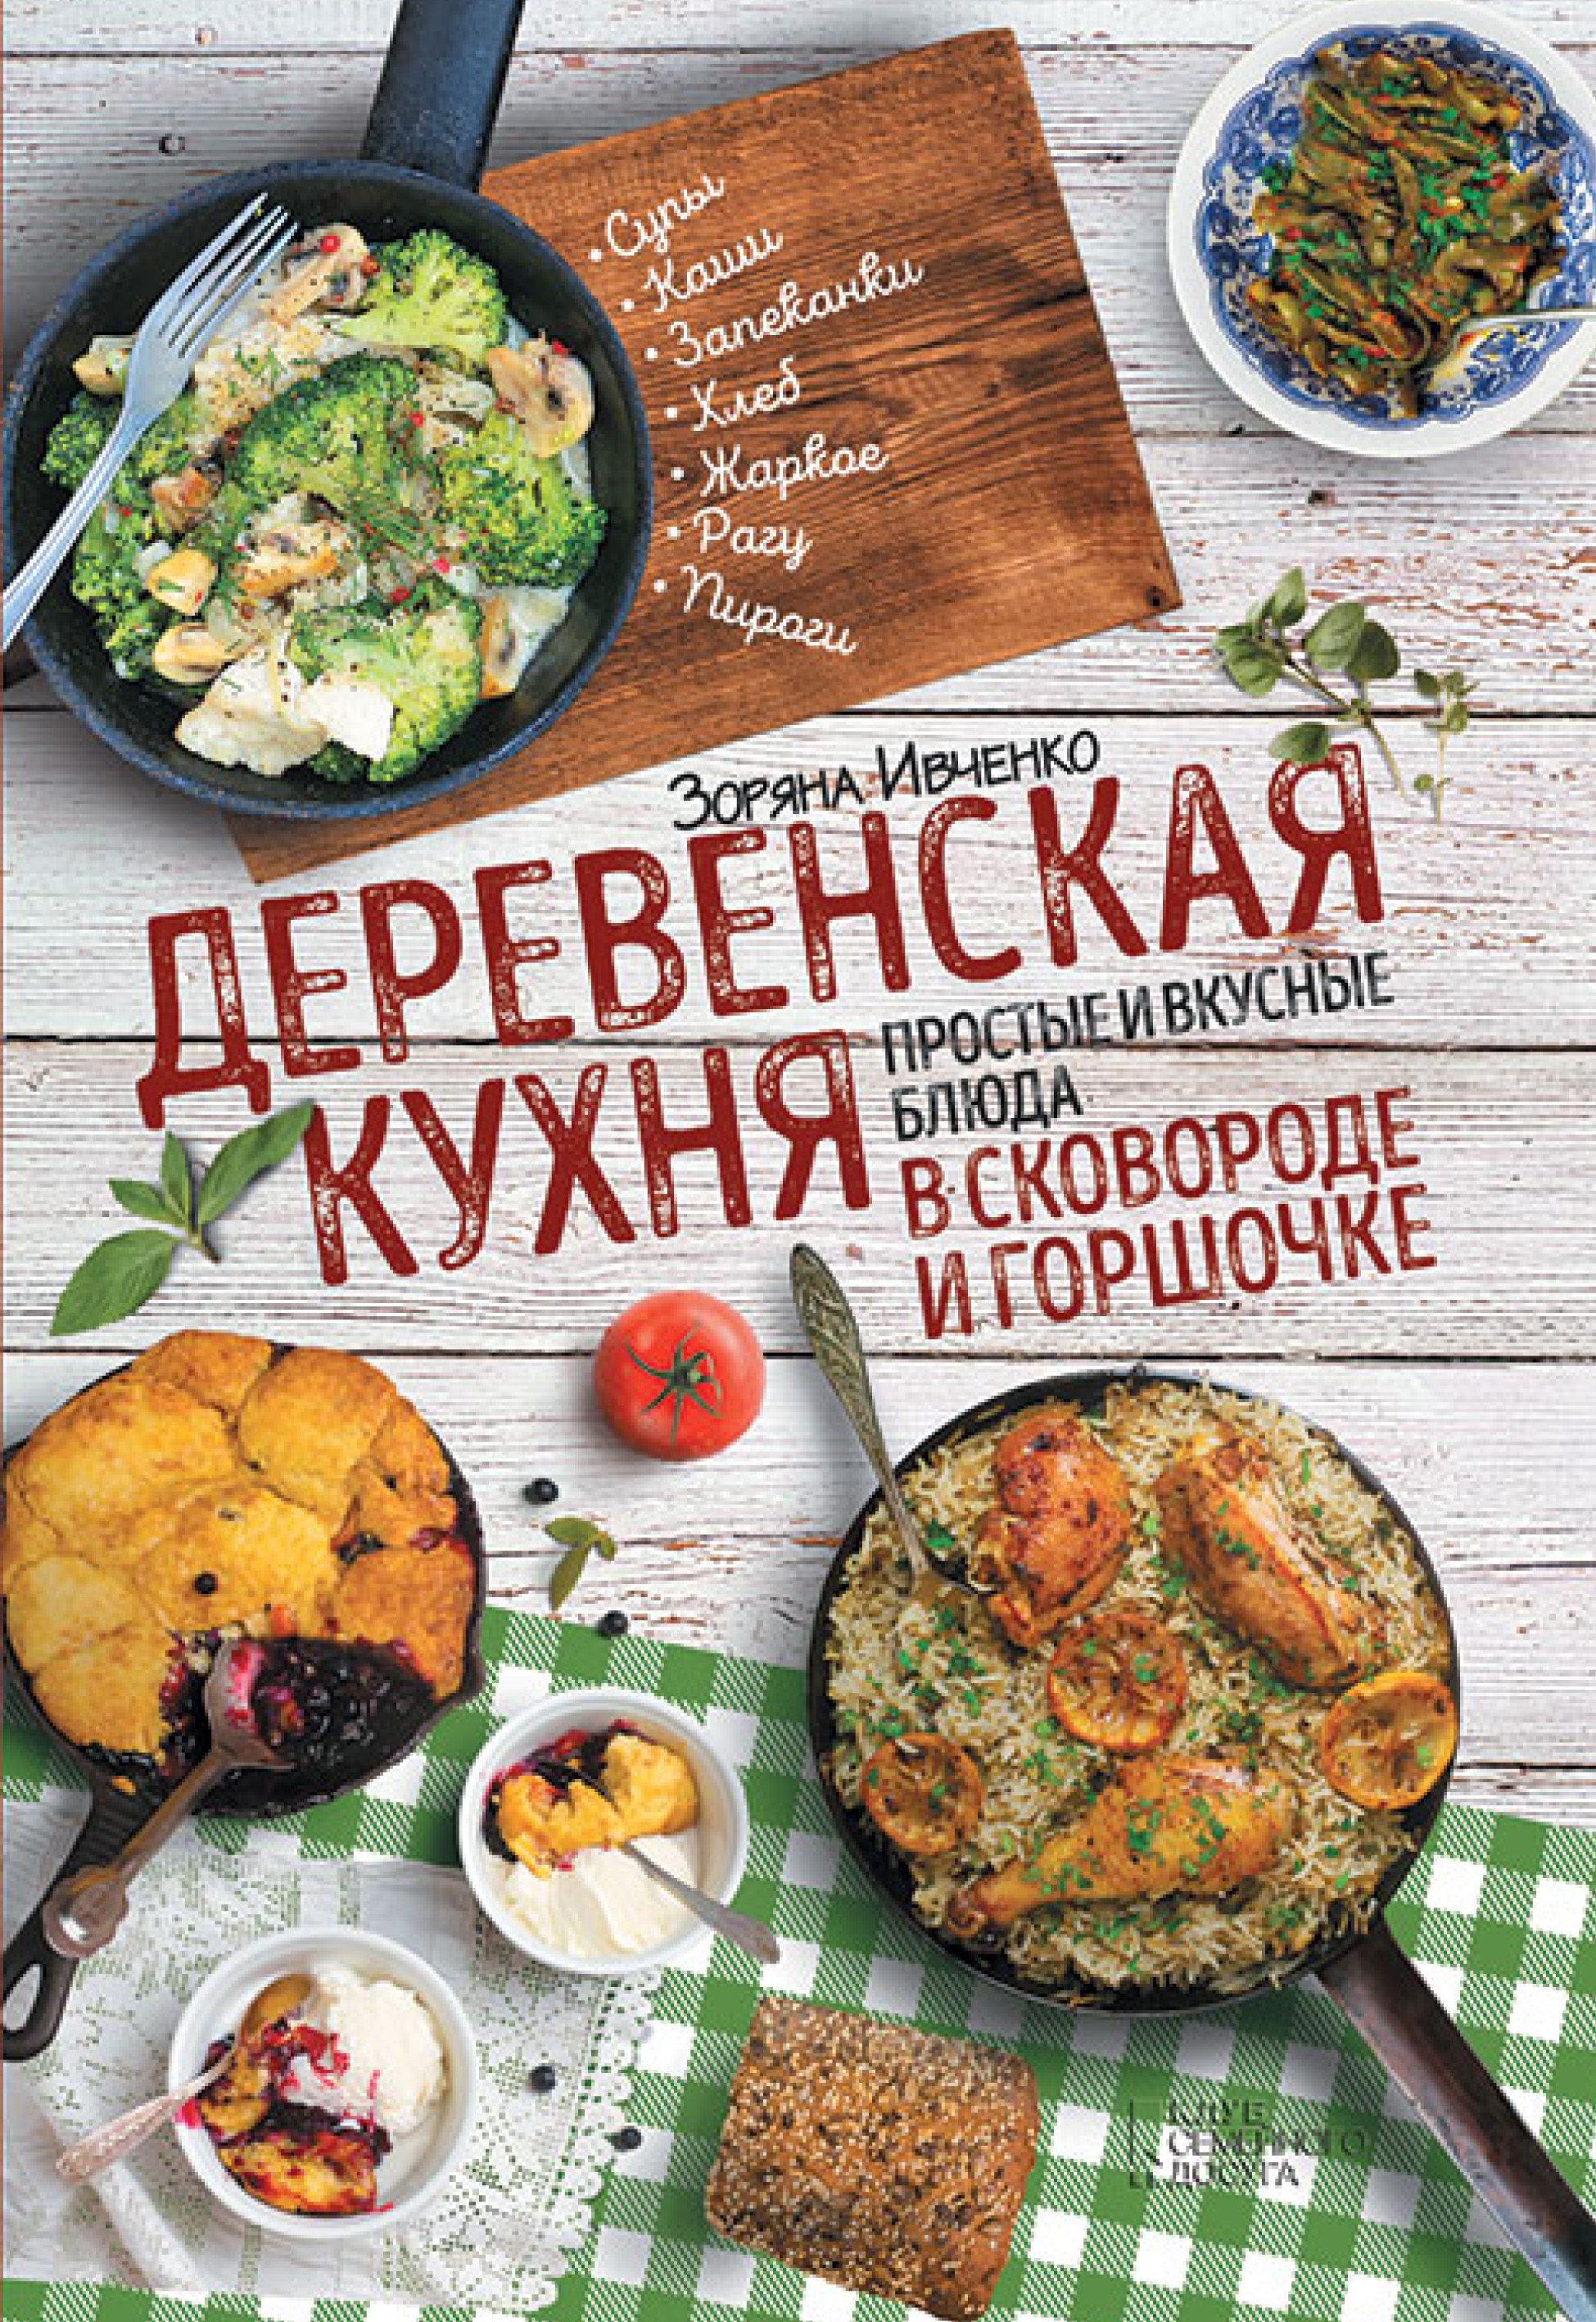 Зоряна Ивченко «Деревенская кухня. Простые и вкусные блюда в сковороде и горшочке»